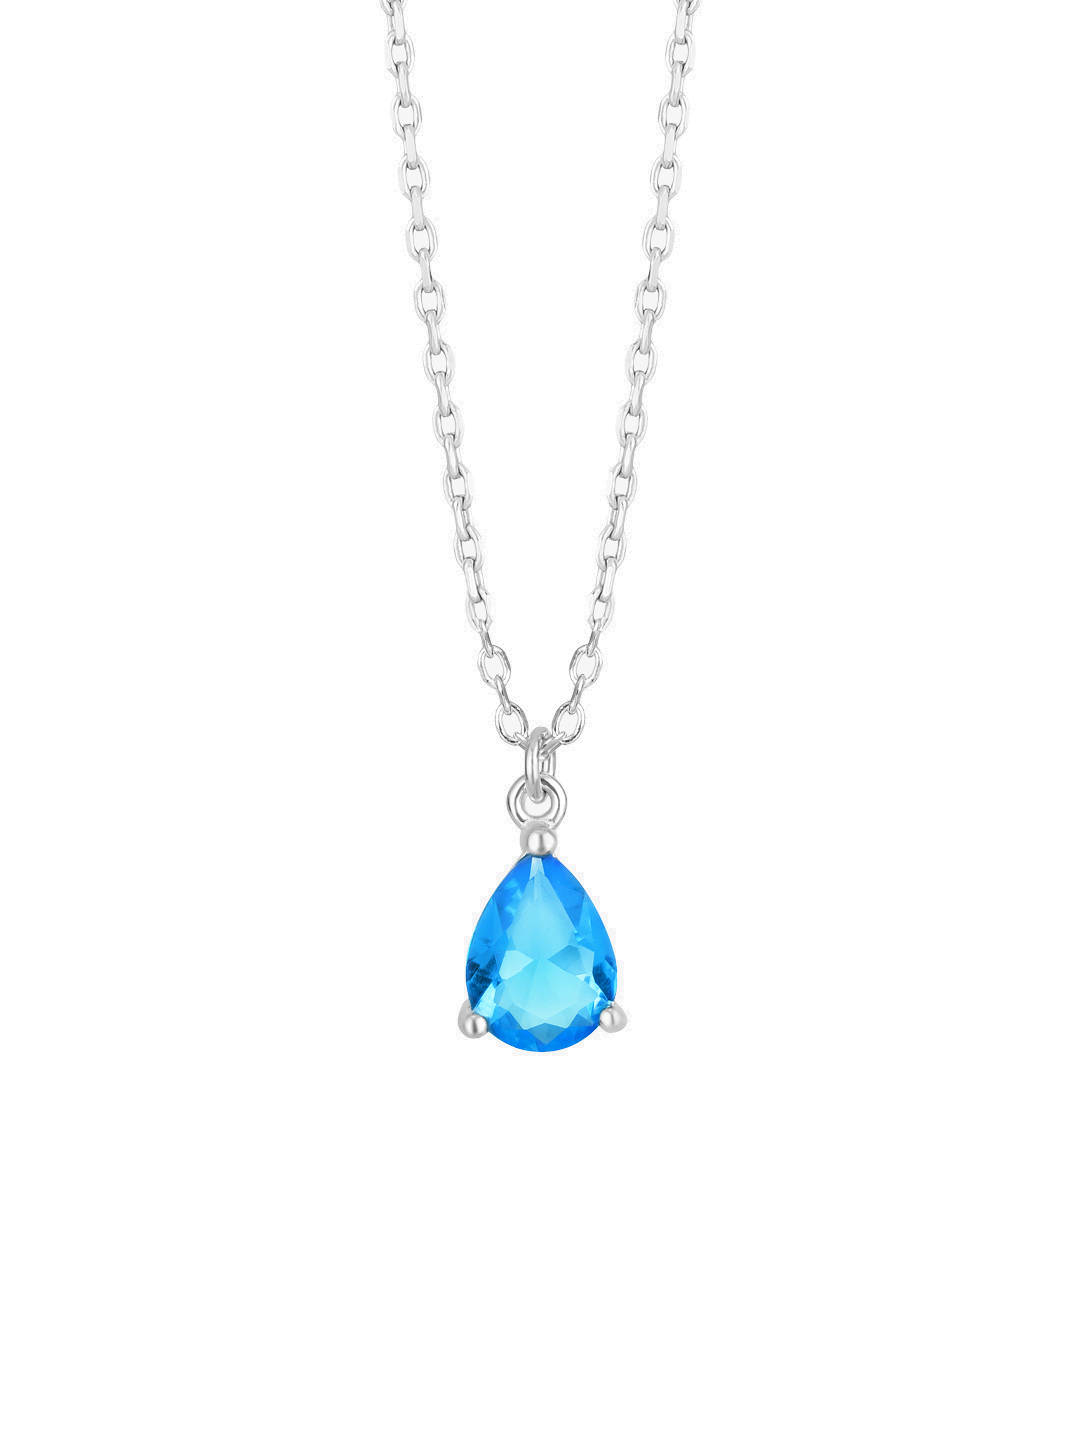 Preciosa Nádherný náhrdelník s modrým křišťálem Azure Candy 5402 67